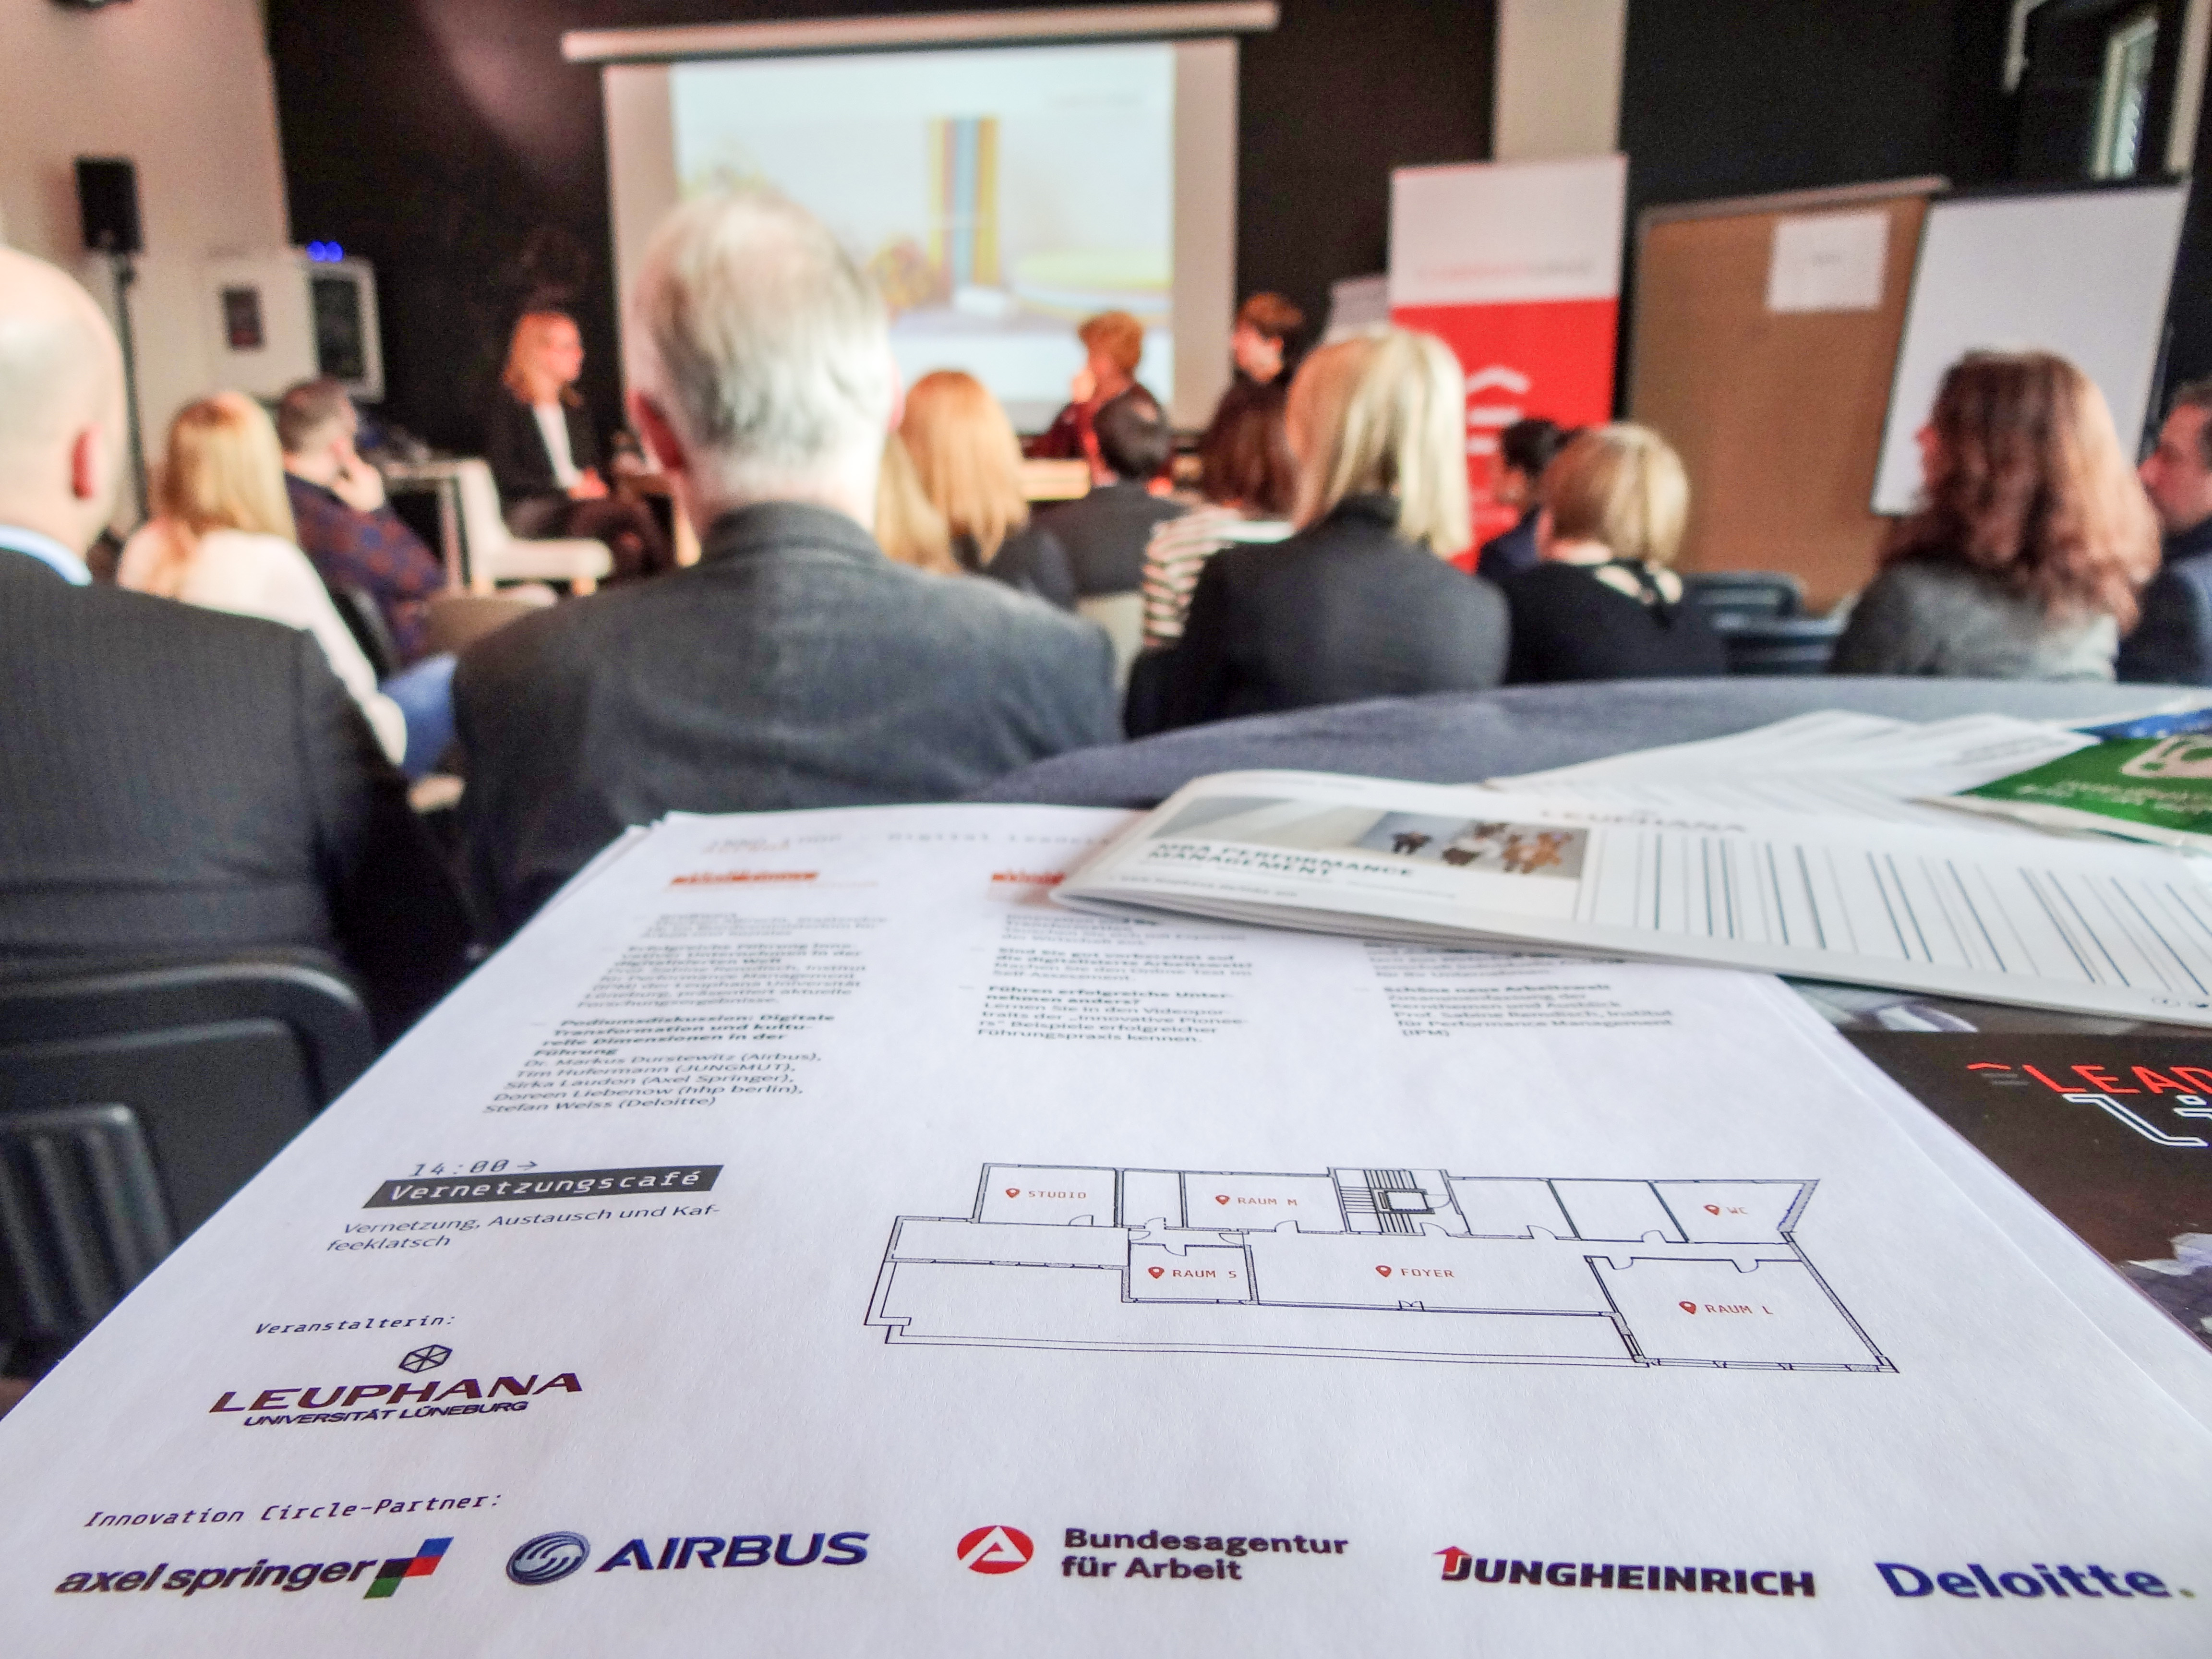 Das Projekt „Leadership in a digital World" an der Leuphana Universität Lüneburg wird unterstützt durch die Kooperationspartner Axel Springer, Airbus, Bundesagentur für Arbeit, Jungheinrich und Deloitte